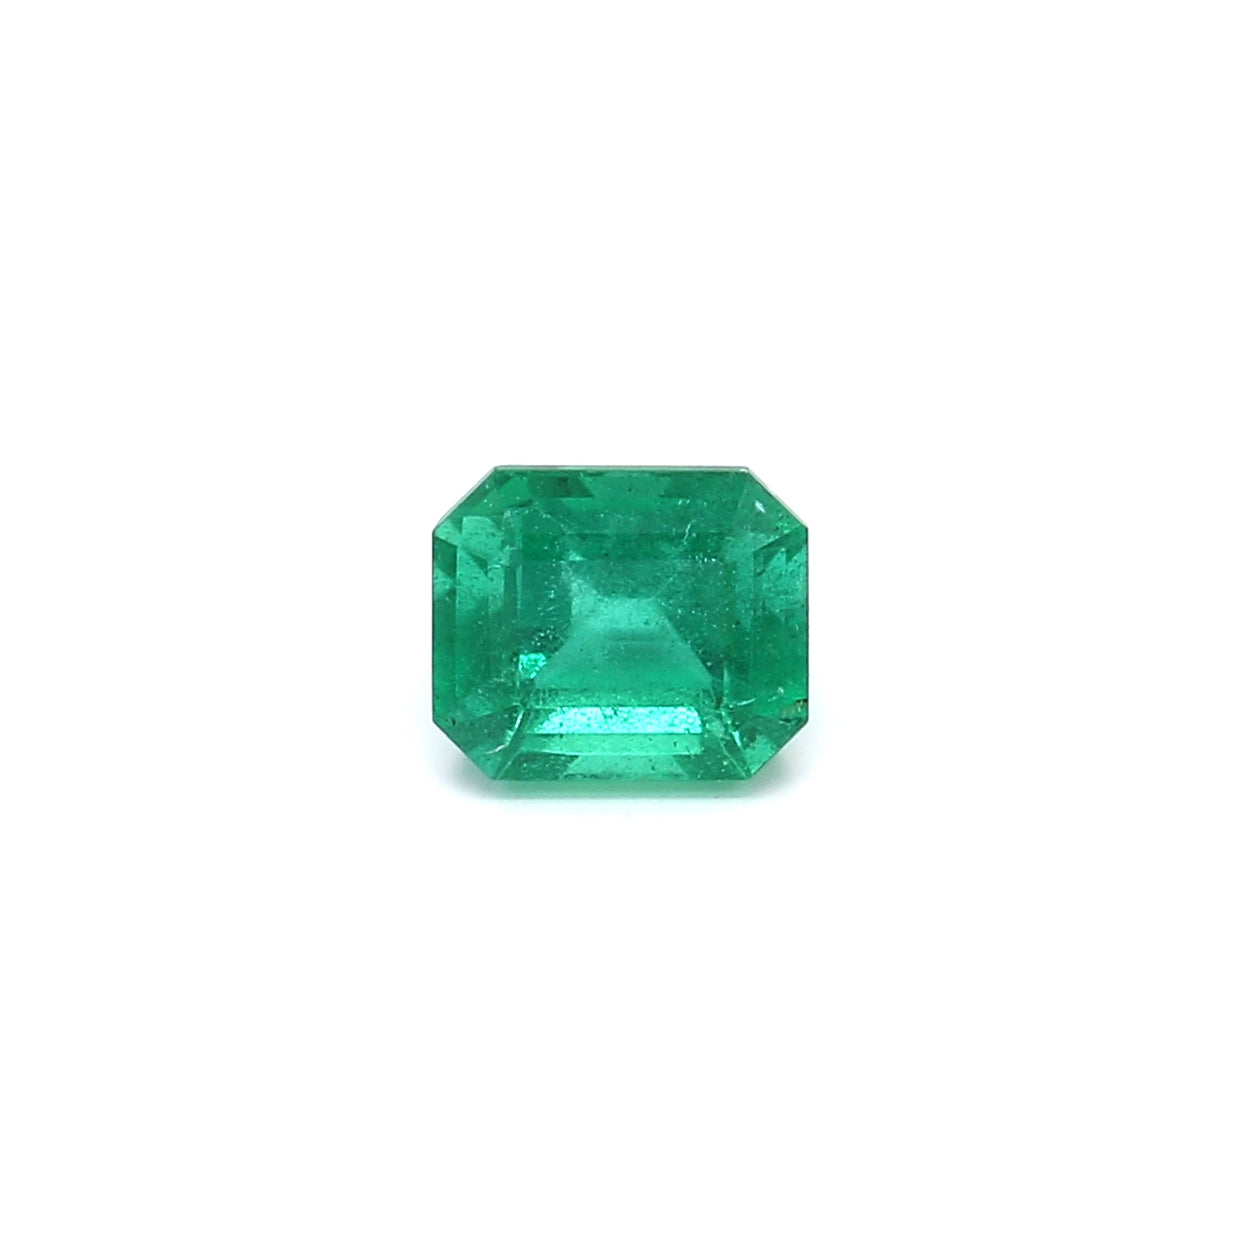 1.08ct Octagon Emerald, Minor Oil, Zambia - 6.62 x 5.62 x 4.29mm